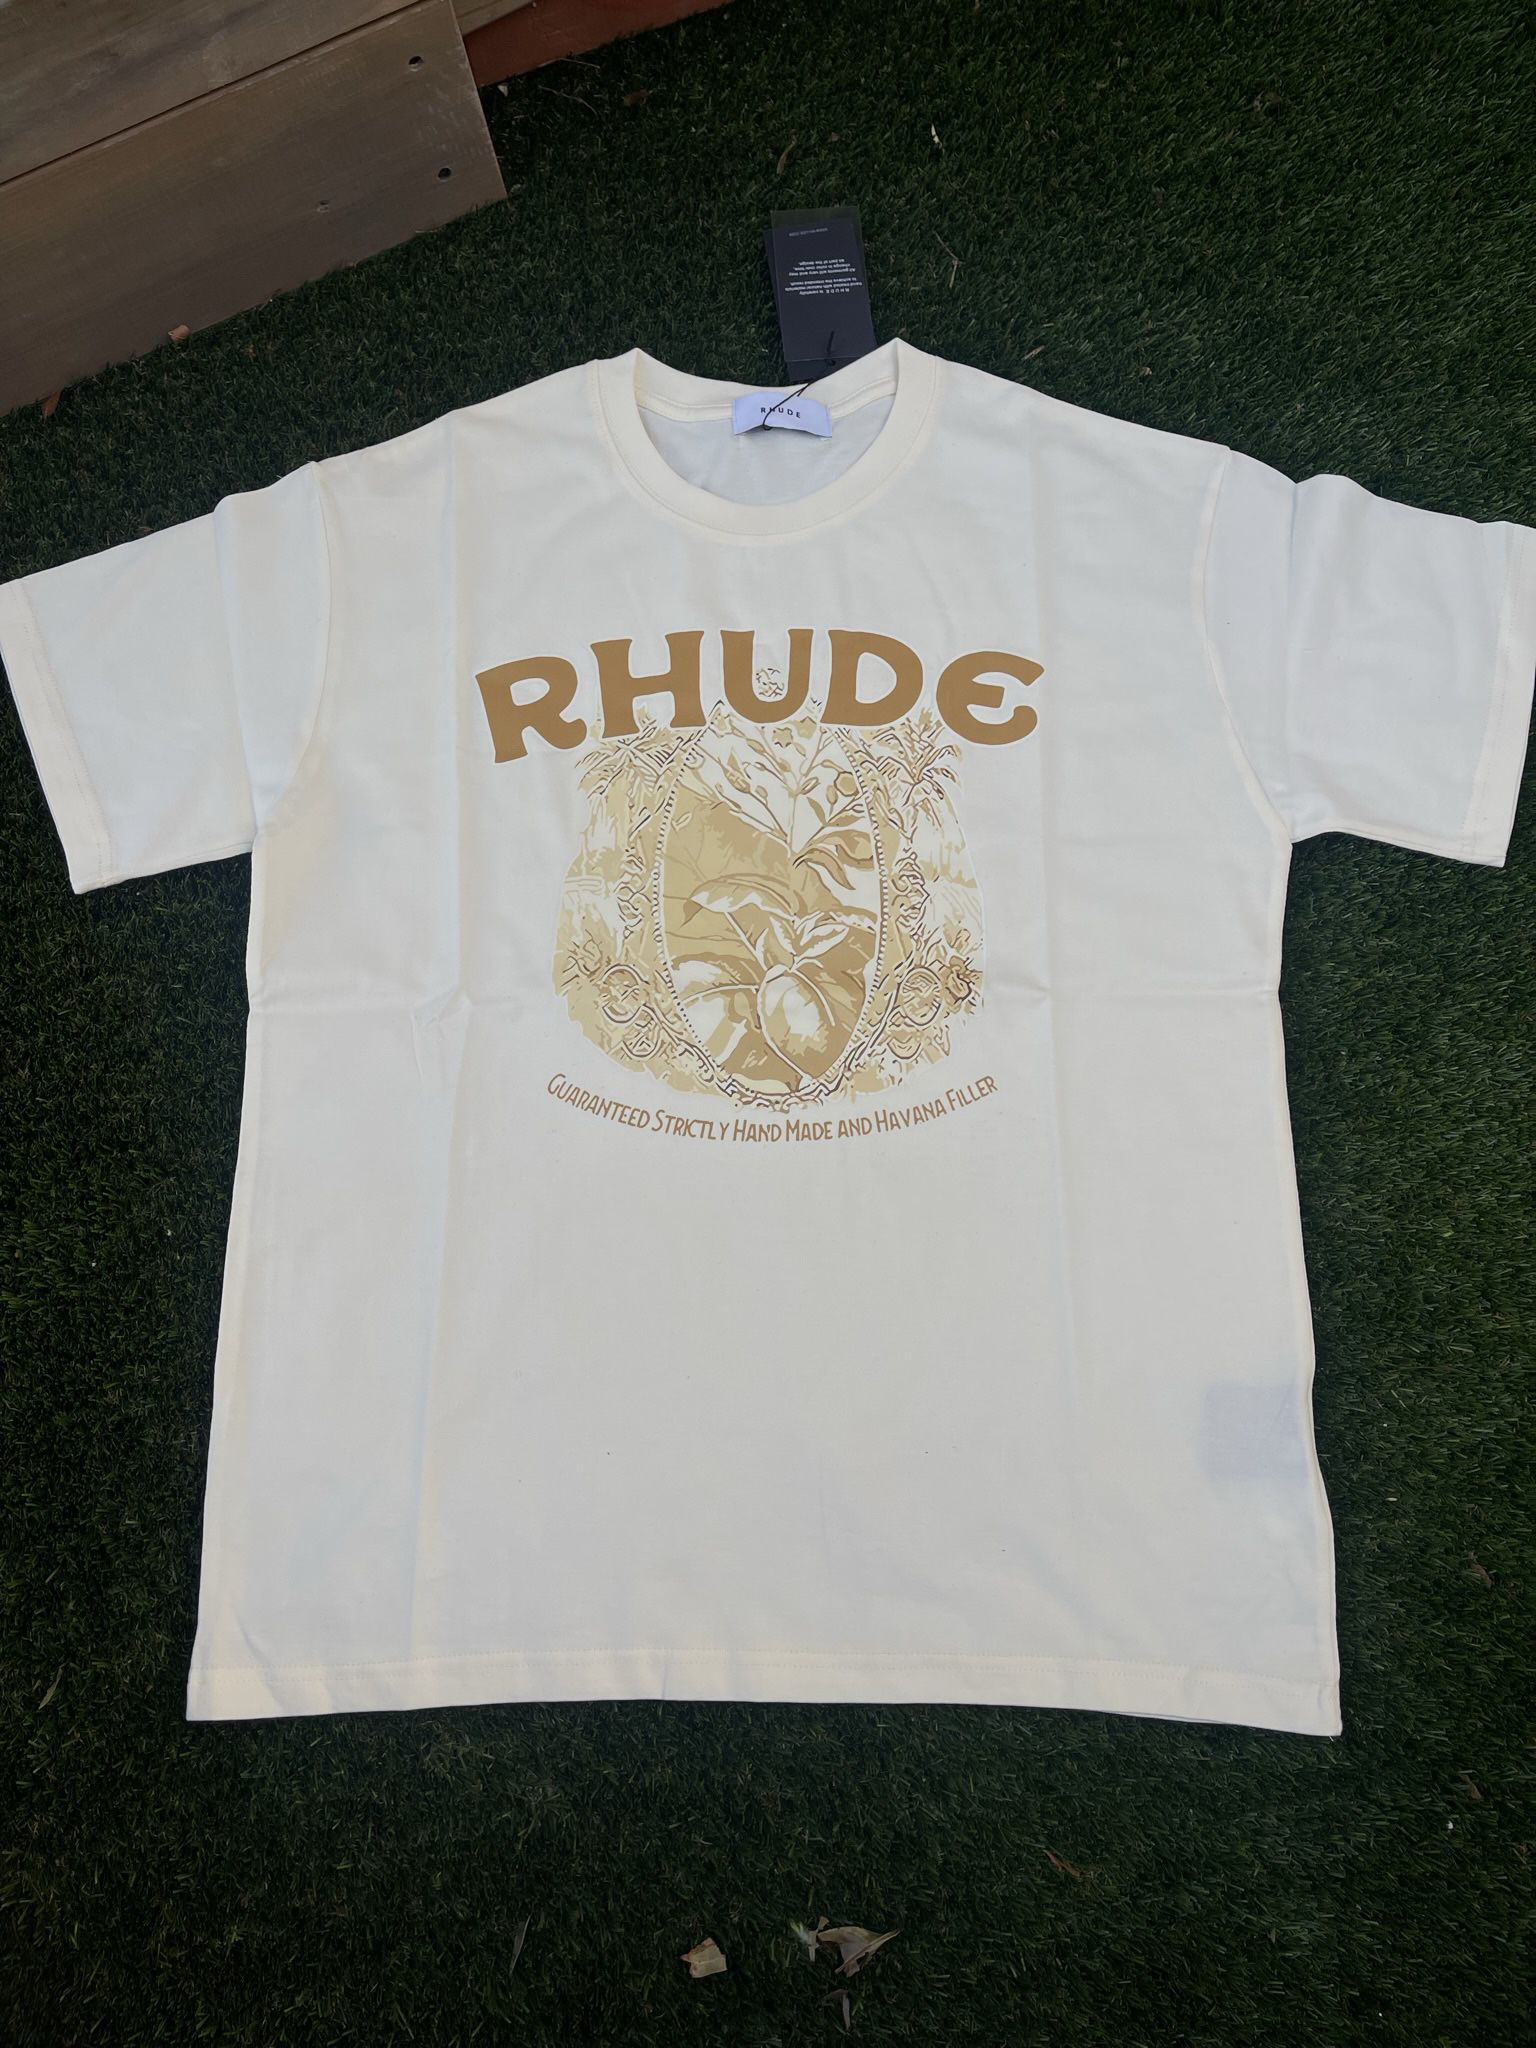 Rhude Shirt Size Small